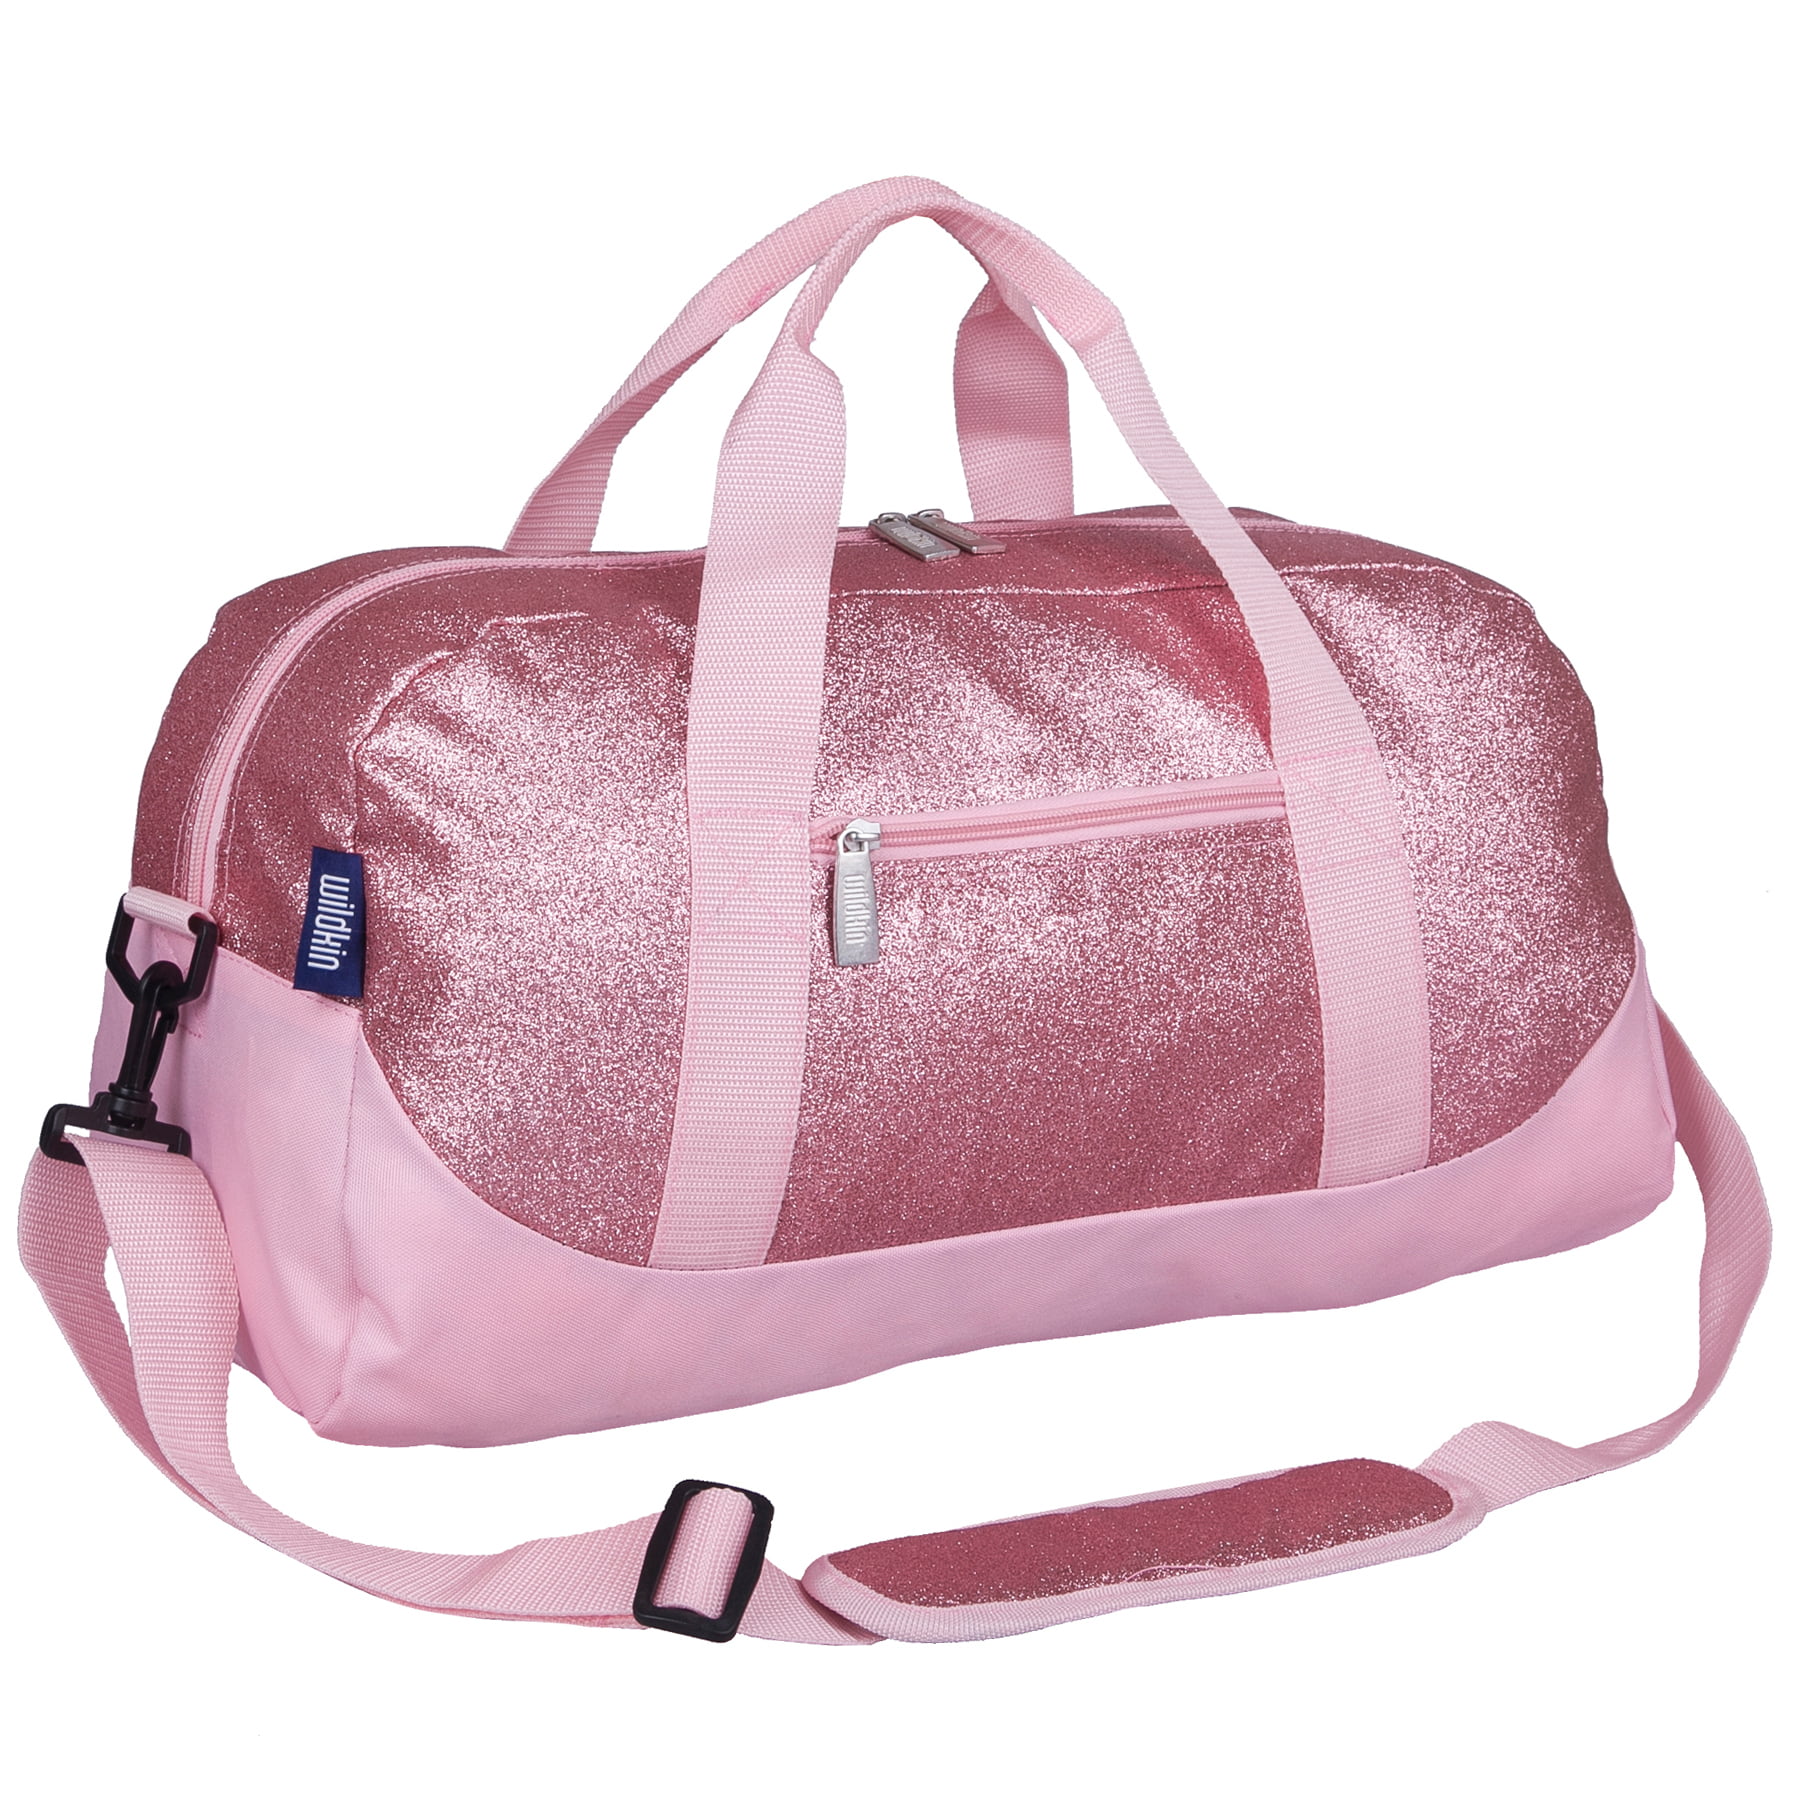 Wildkin Pink Glitter Overnighter Duffel Bag - 0 - 0